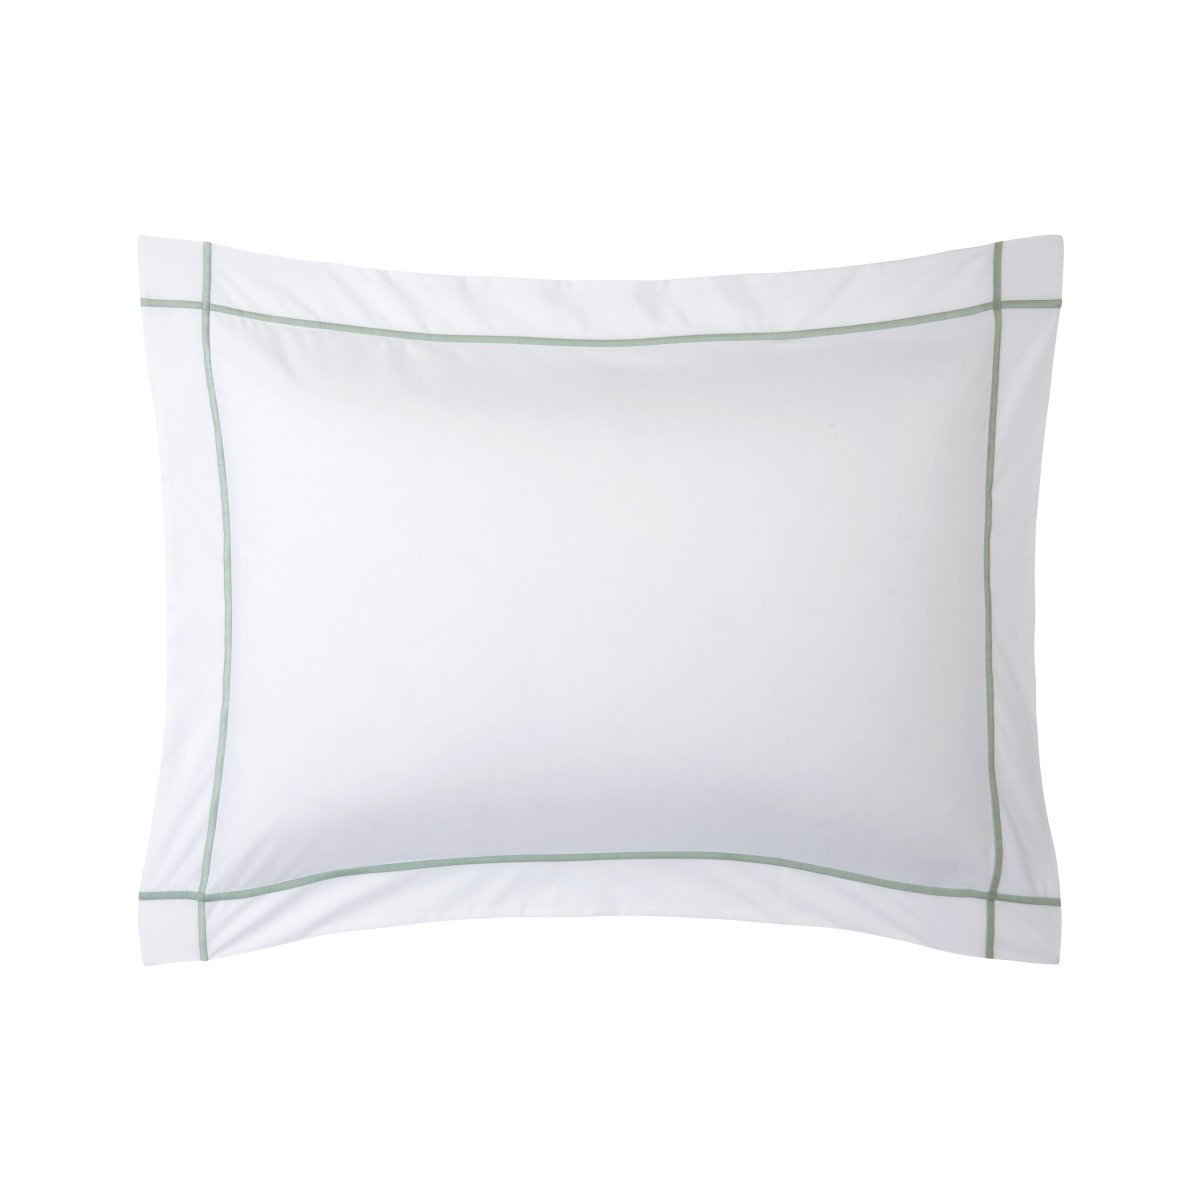 Yves Delorme Pillow Sham - Athena Veronese Green Organic Percale Bedding